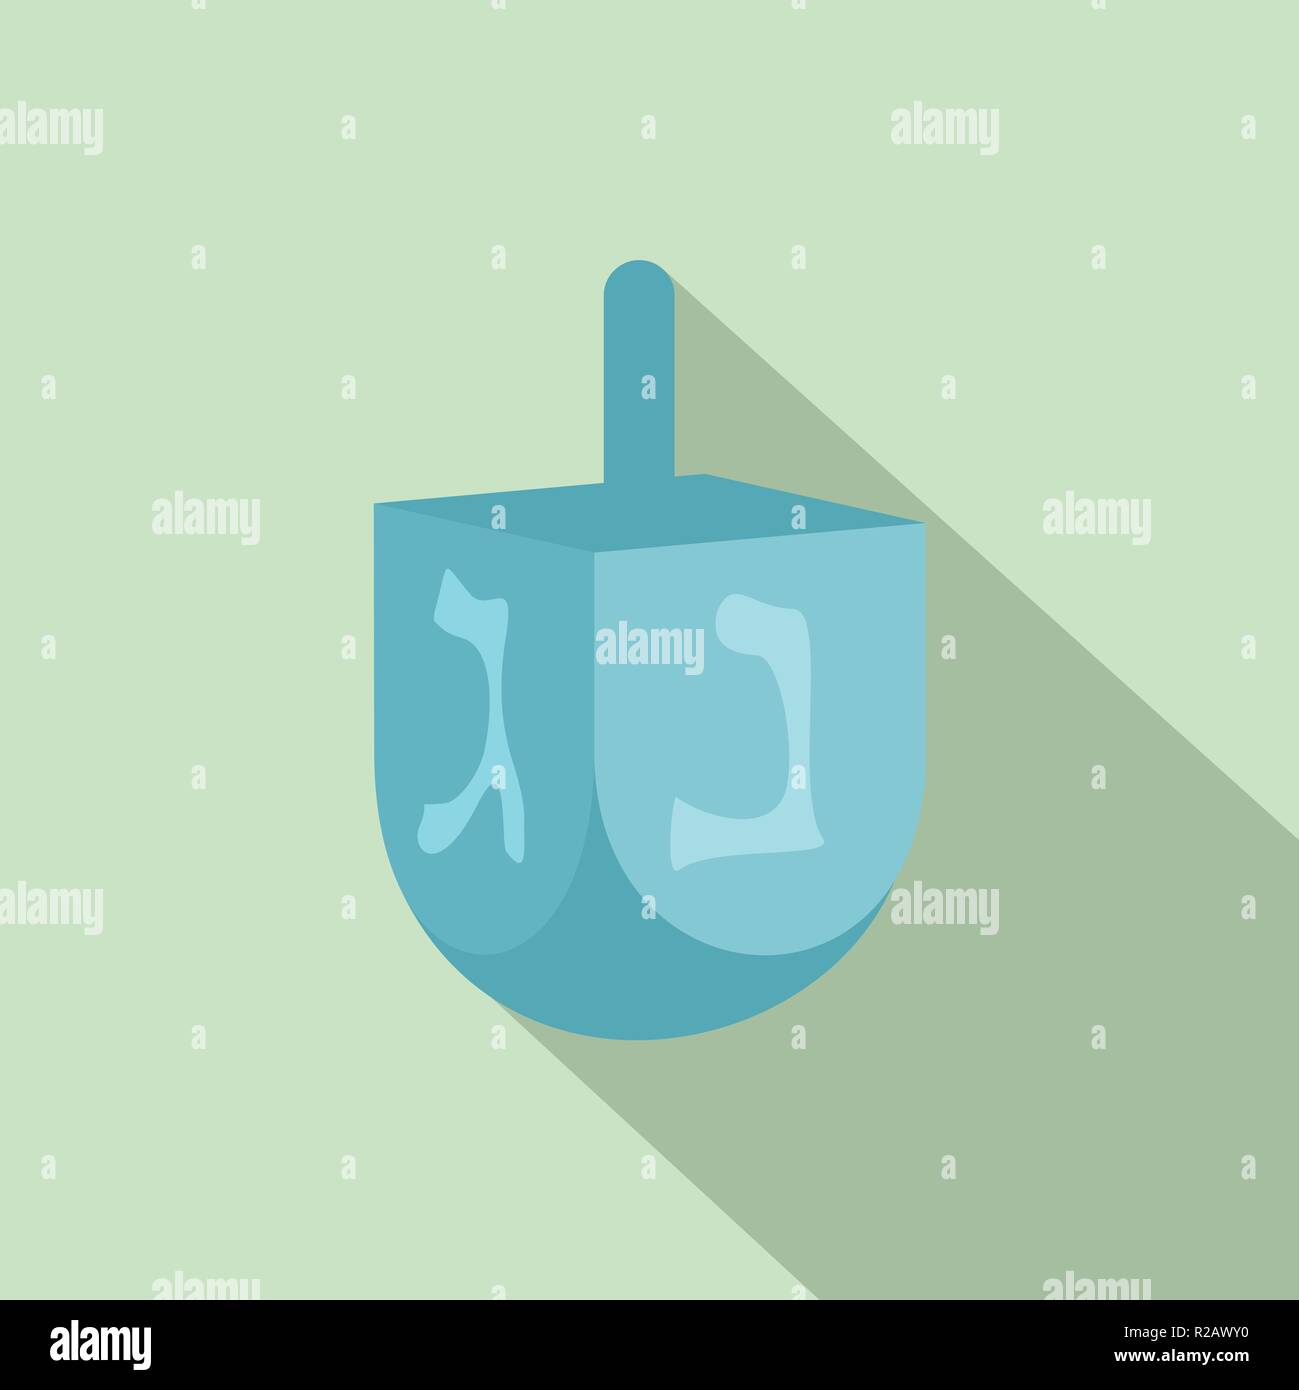 Icône dreidel juif. Télévision illustration de l'icône vecteur dreidel juif pour la conception web Illustration de Vecteur